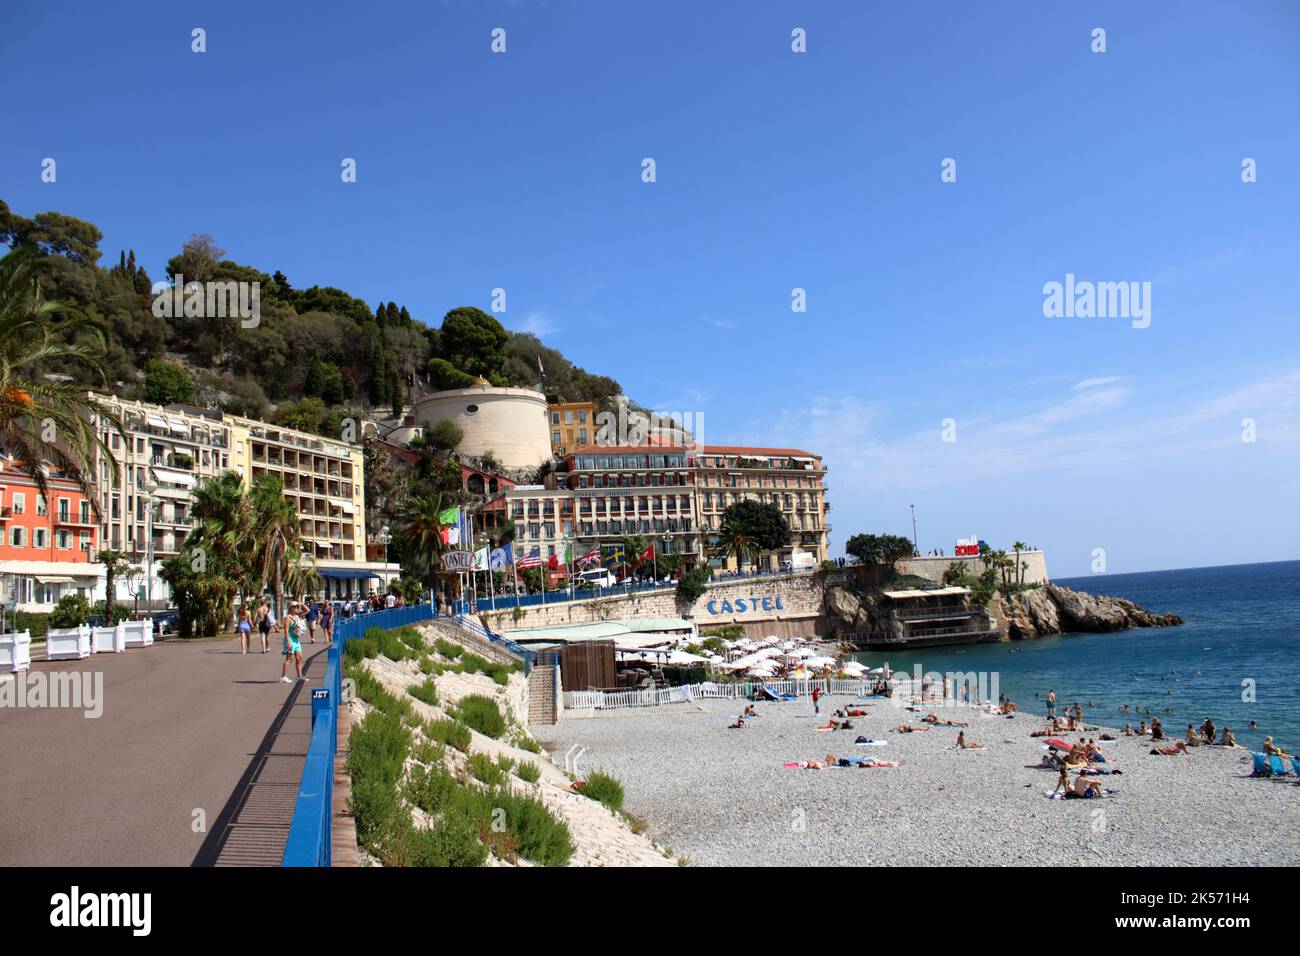 Vue sur la plage du Castel Plage et les bâtiments environnants sur le quai des États-Unis situé à Nice sur la Côte d'Azur dans le sud de la France. Banque D'Images